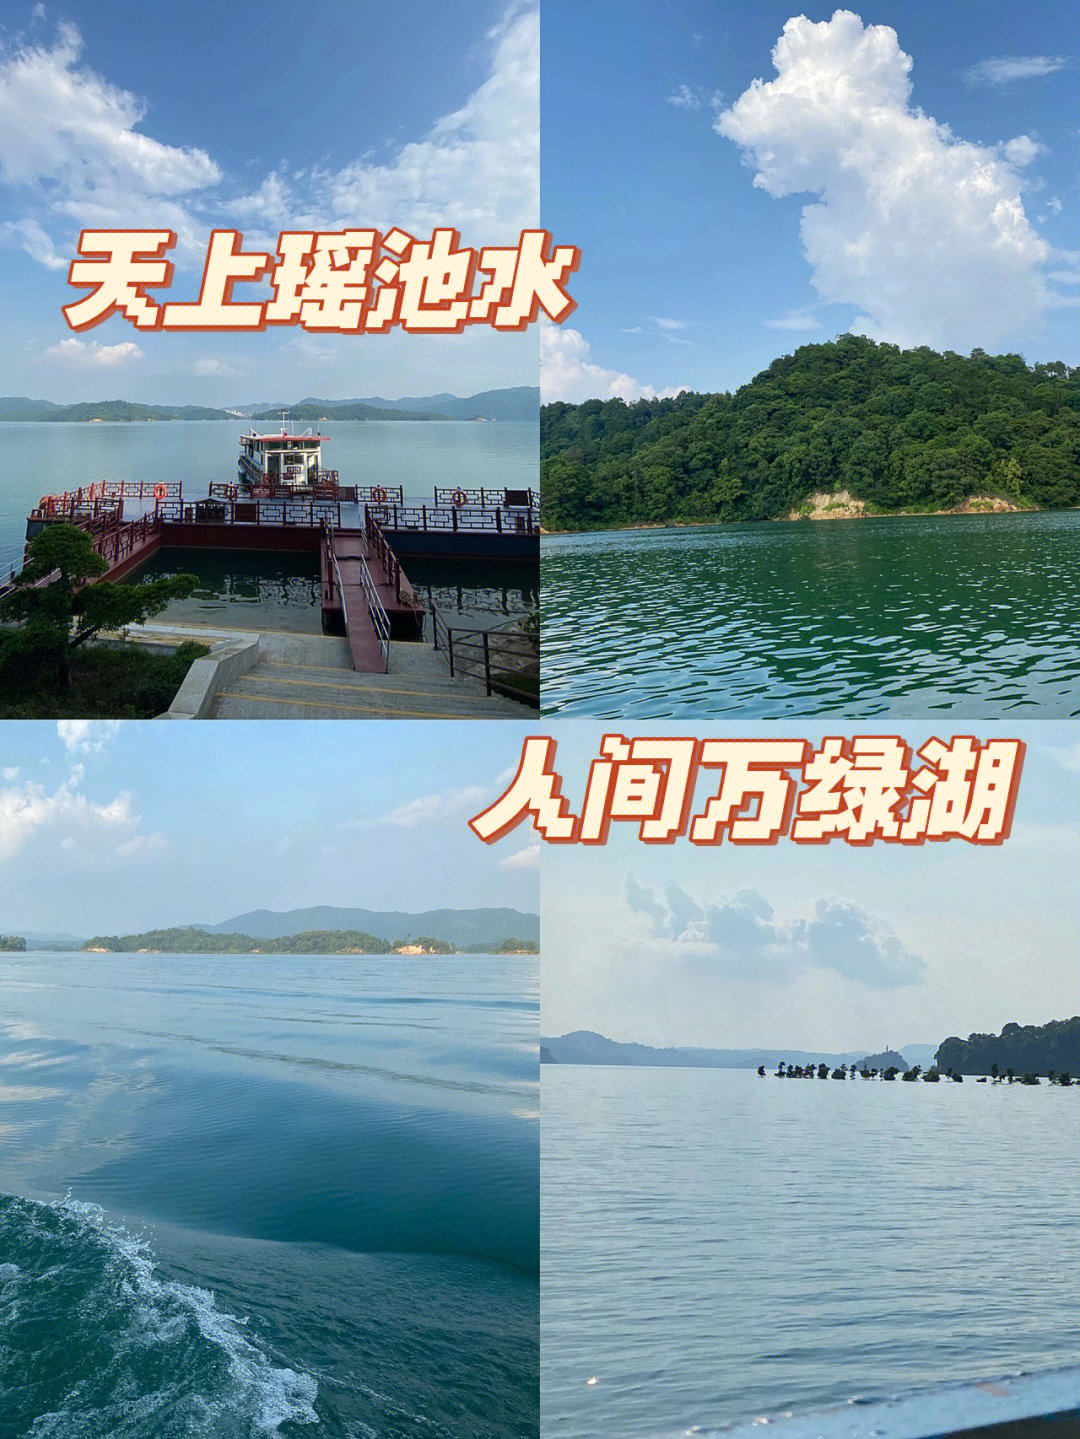 广州周边带狗游河源景区篇166万绿湖景区